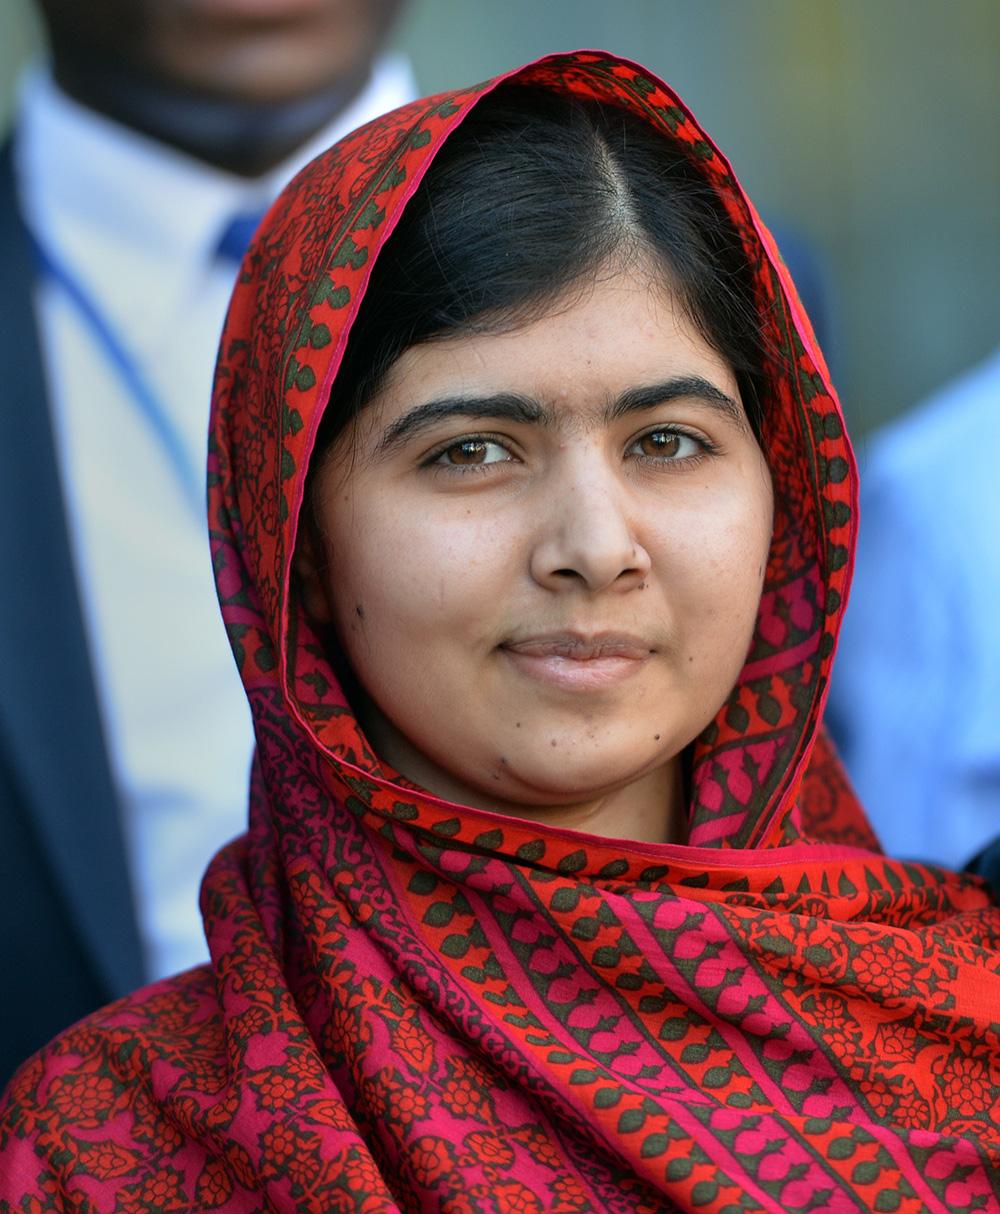 Malala Yousafzai föddes 1997 i Pakistan. Hon blev känd när hon började blogga om talibanstyret i sin hemstad. Hennes kamp för rätt till utbildning belyste situationen för tiotusentals flickor som nekades skolgång av militanta islamister.